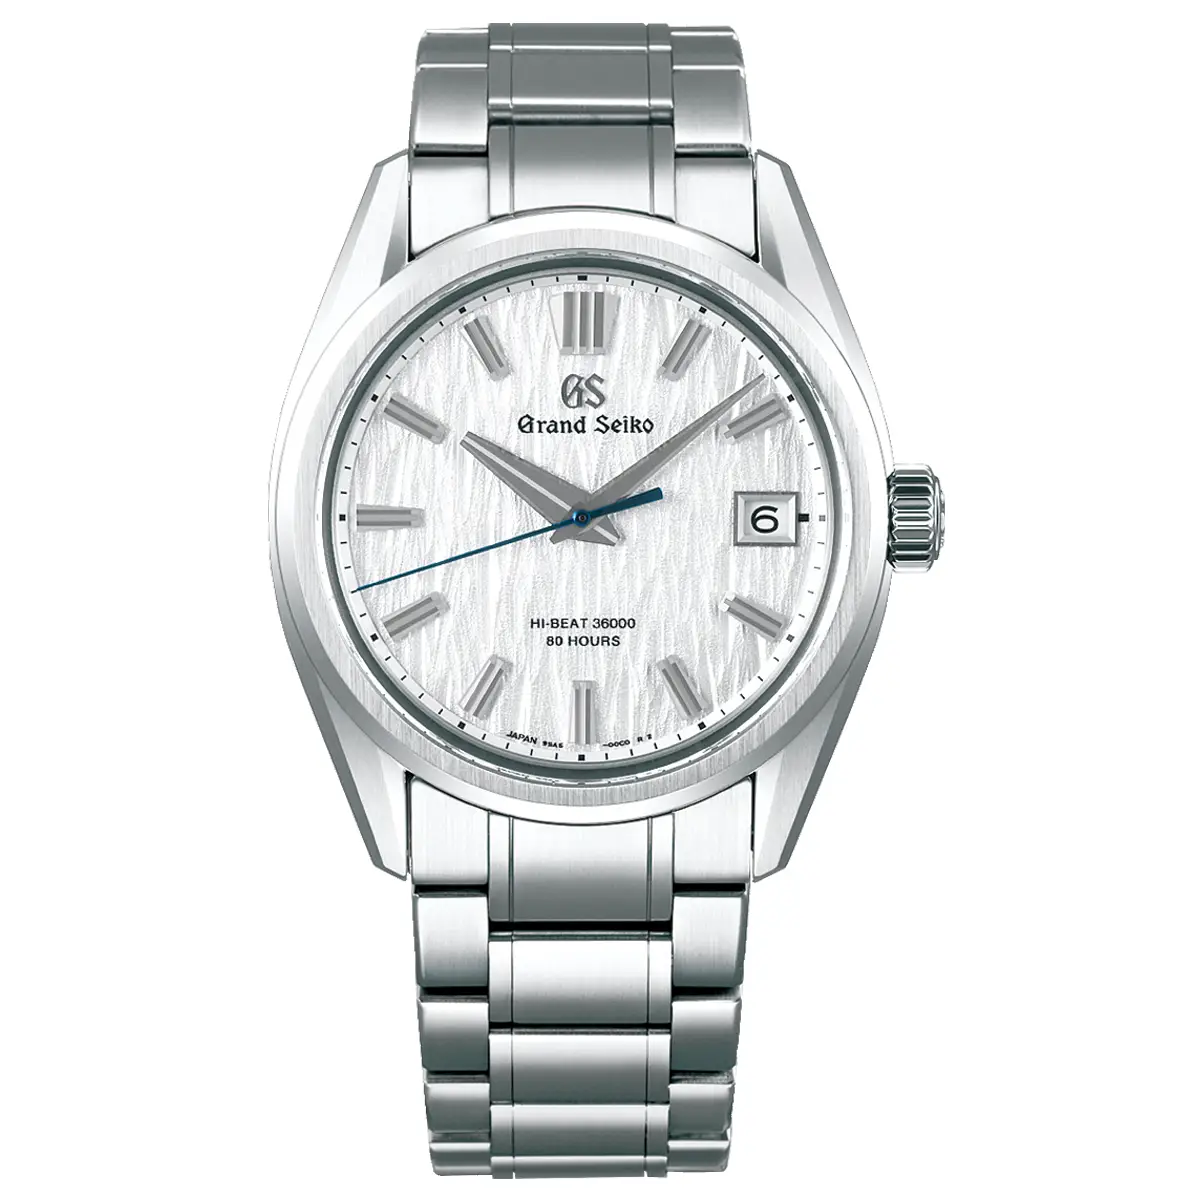 Đồng hồ Grand Seiko Evolution 9 Collection “White Birch” SLGH005 mặt số màu bạc. Thiết kế lộ cơ. Dây đeo bằng thép. Thân vỏ bằng thép.